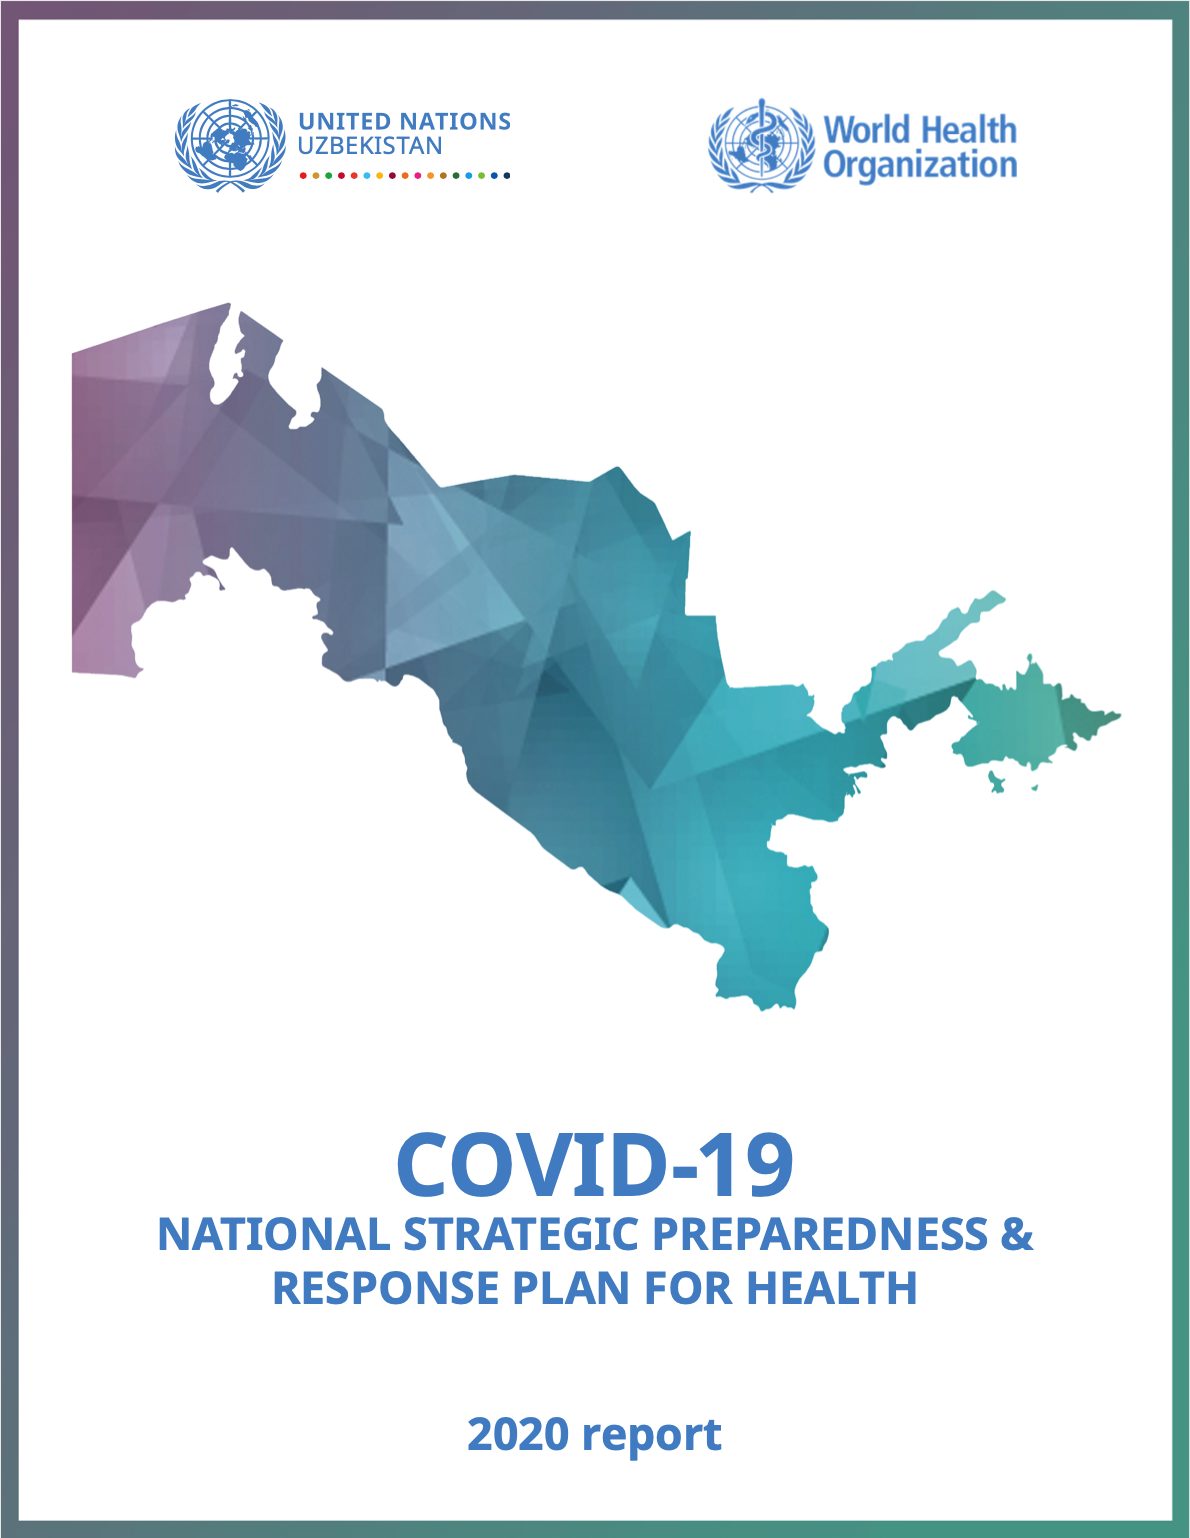 COVID-19 Национальный стратегический план обеспечения готовности и реагирования в области здравоохранения: отчет за 2020 год